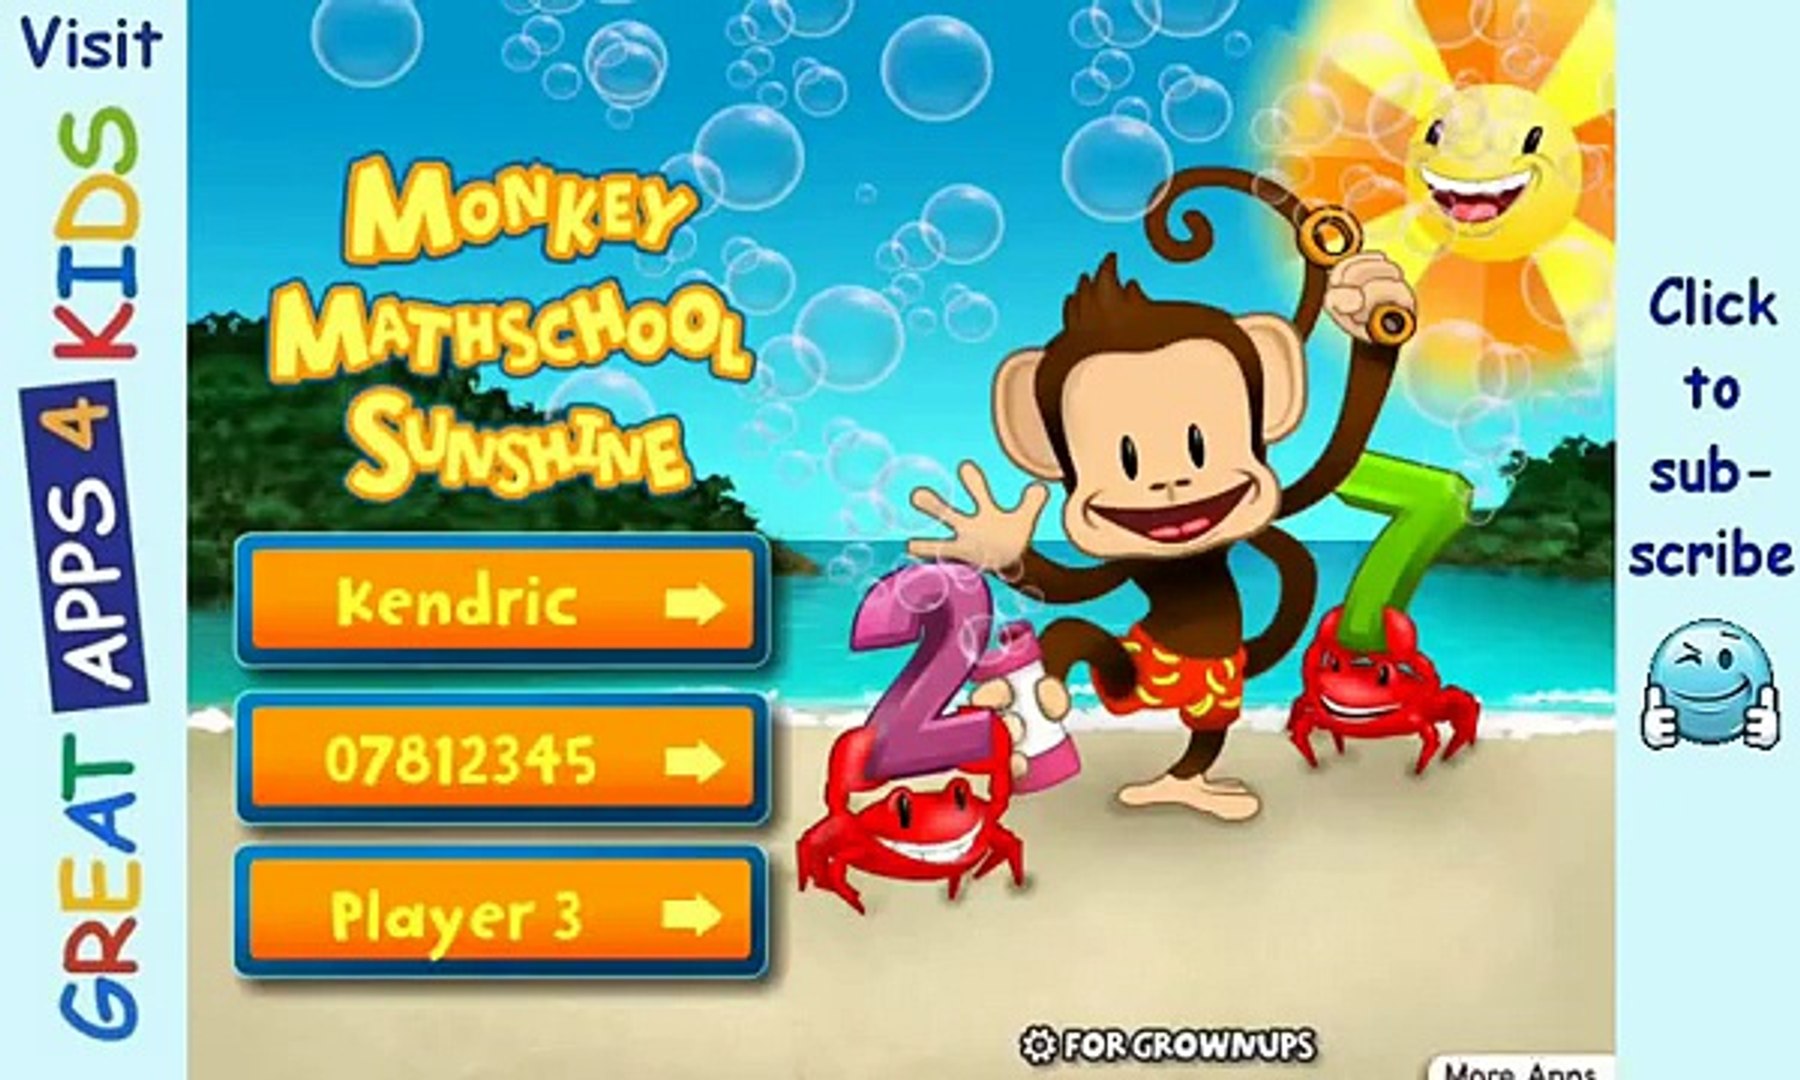 Monkey Math School Sunshine | Fun Math App For Kids